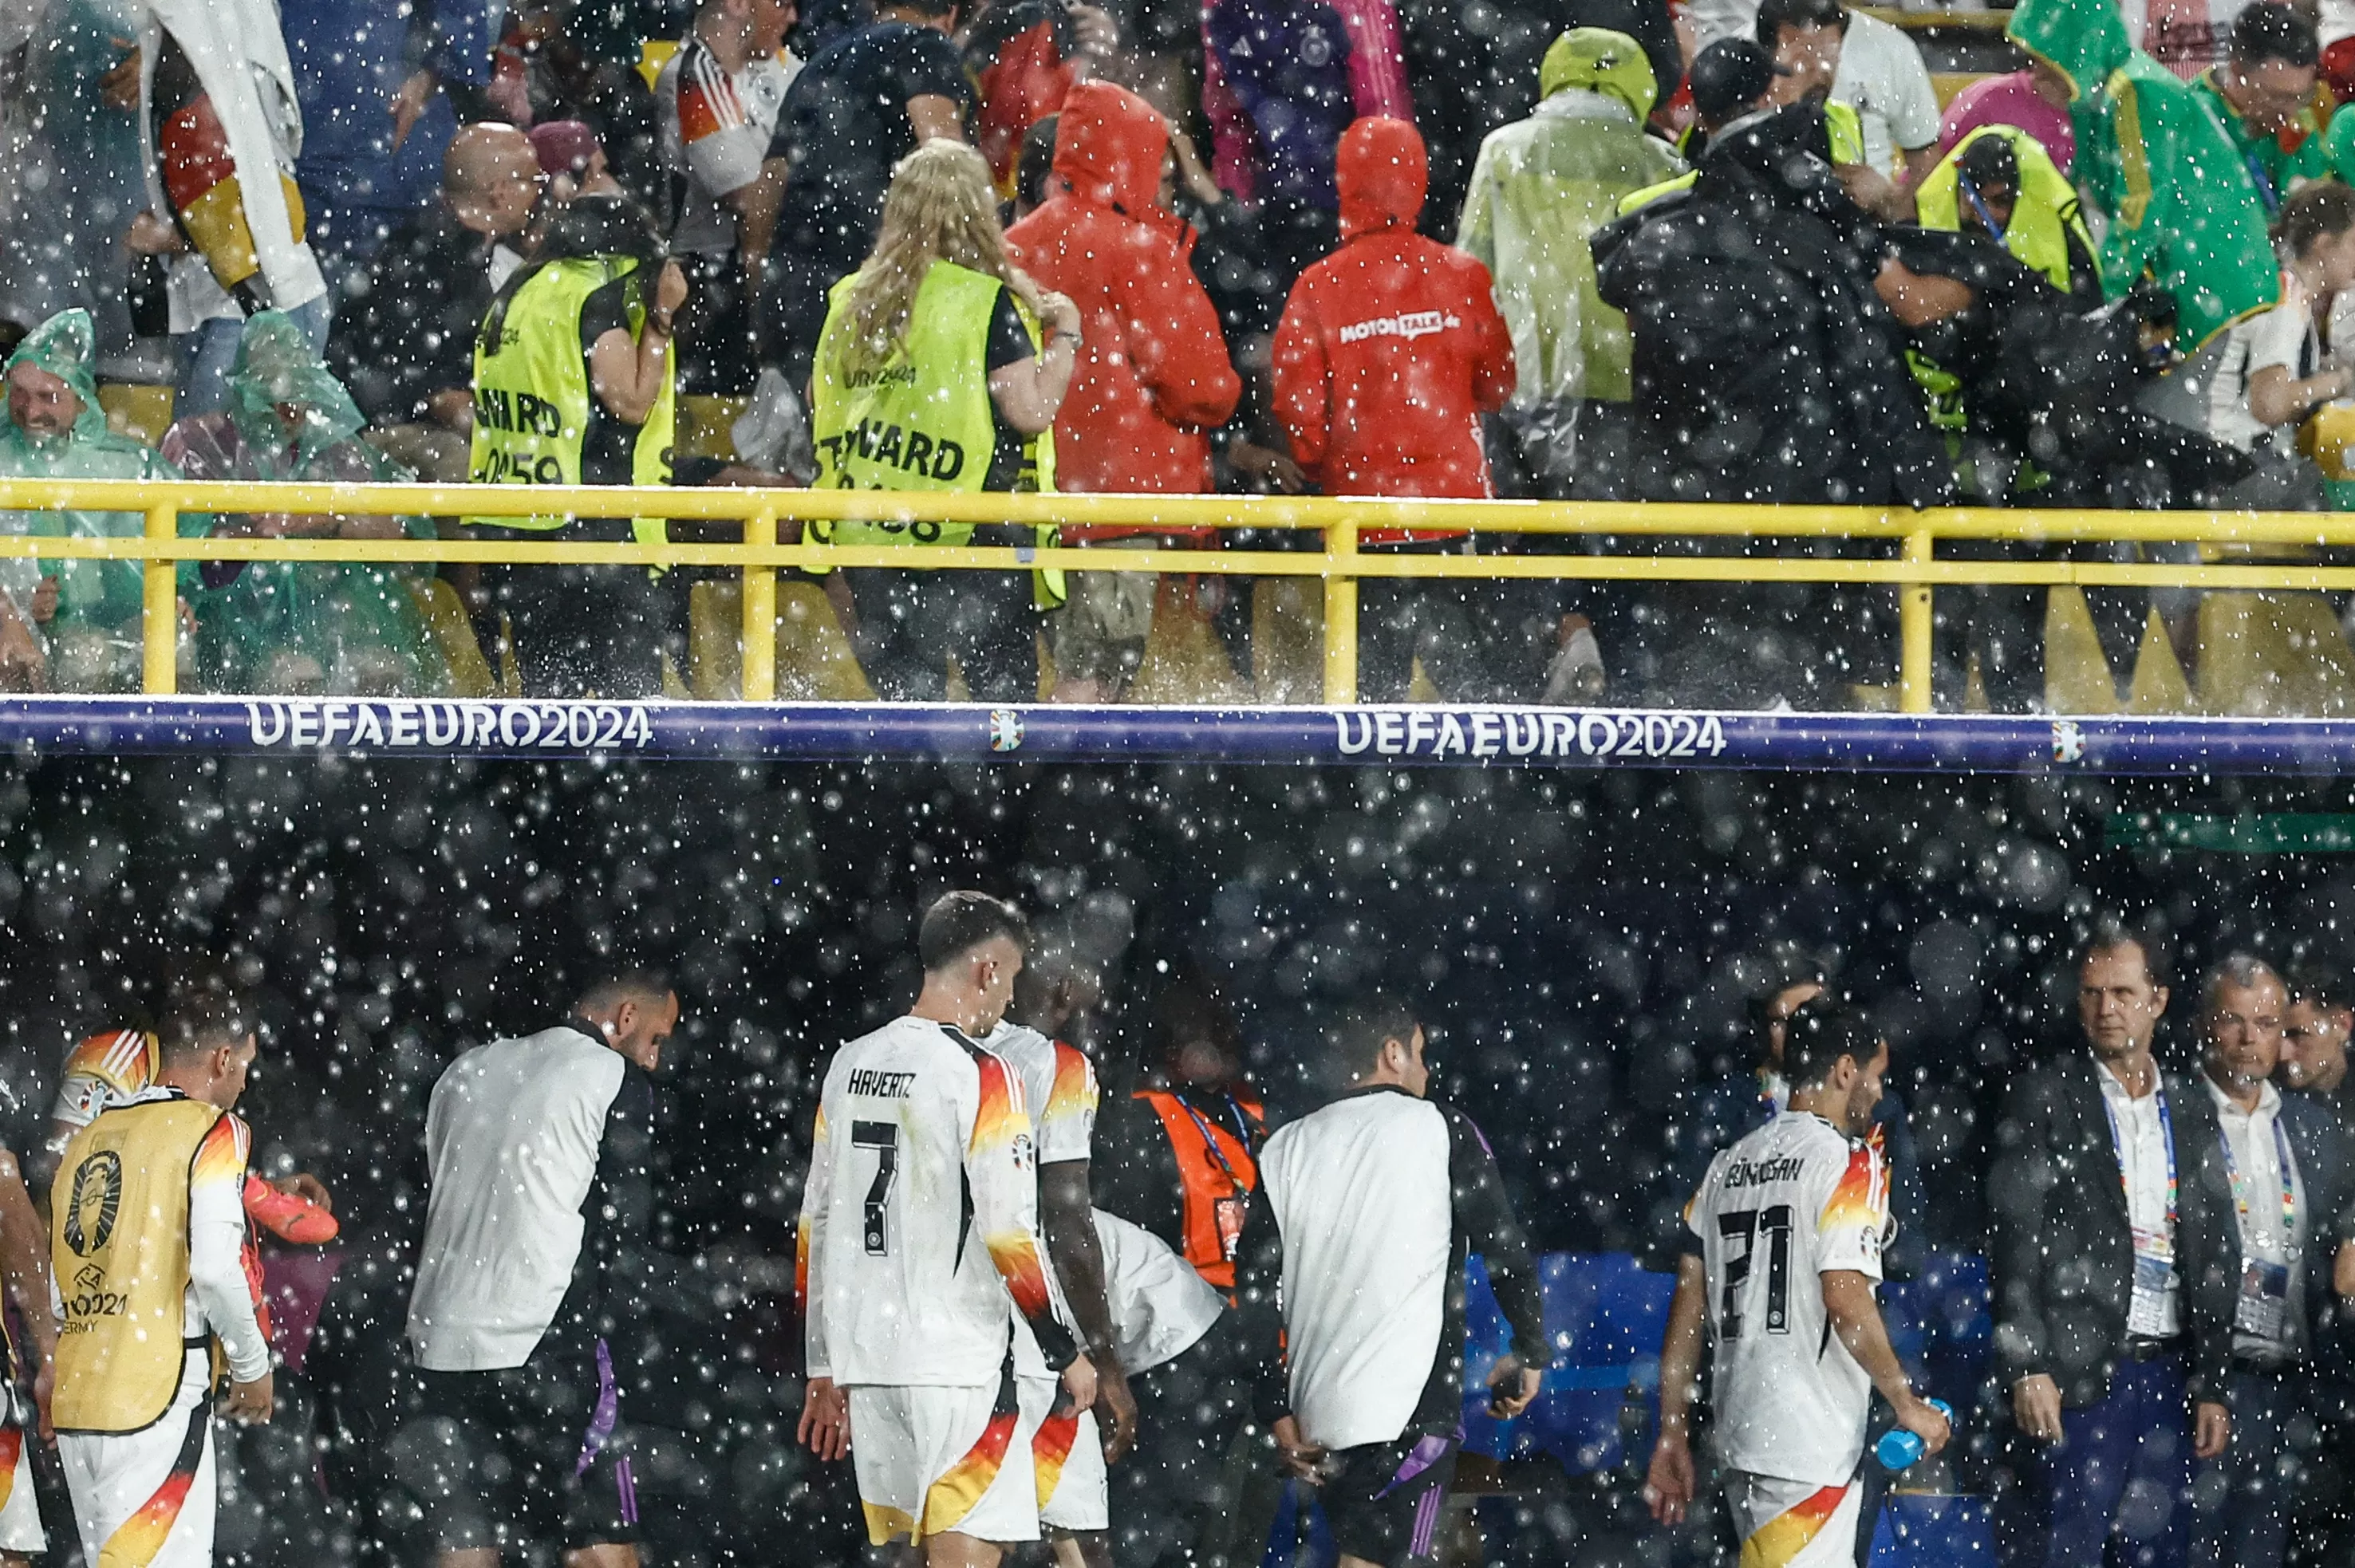 Los equipos tuvieron que abandonar el campo de juego ante la intensa precipitación / Foto: AFP